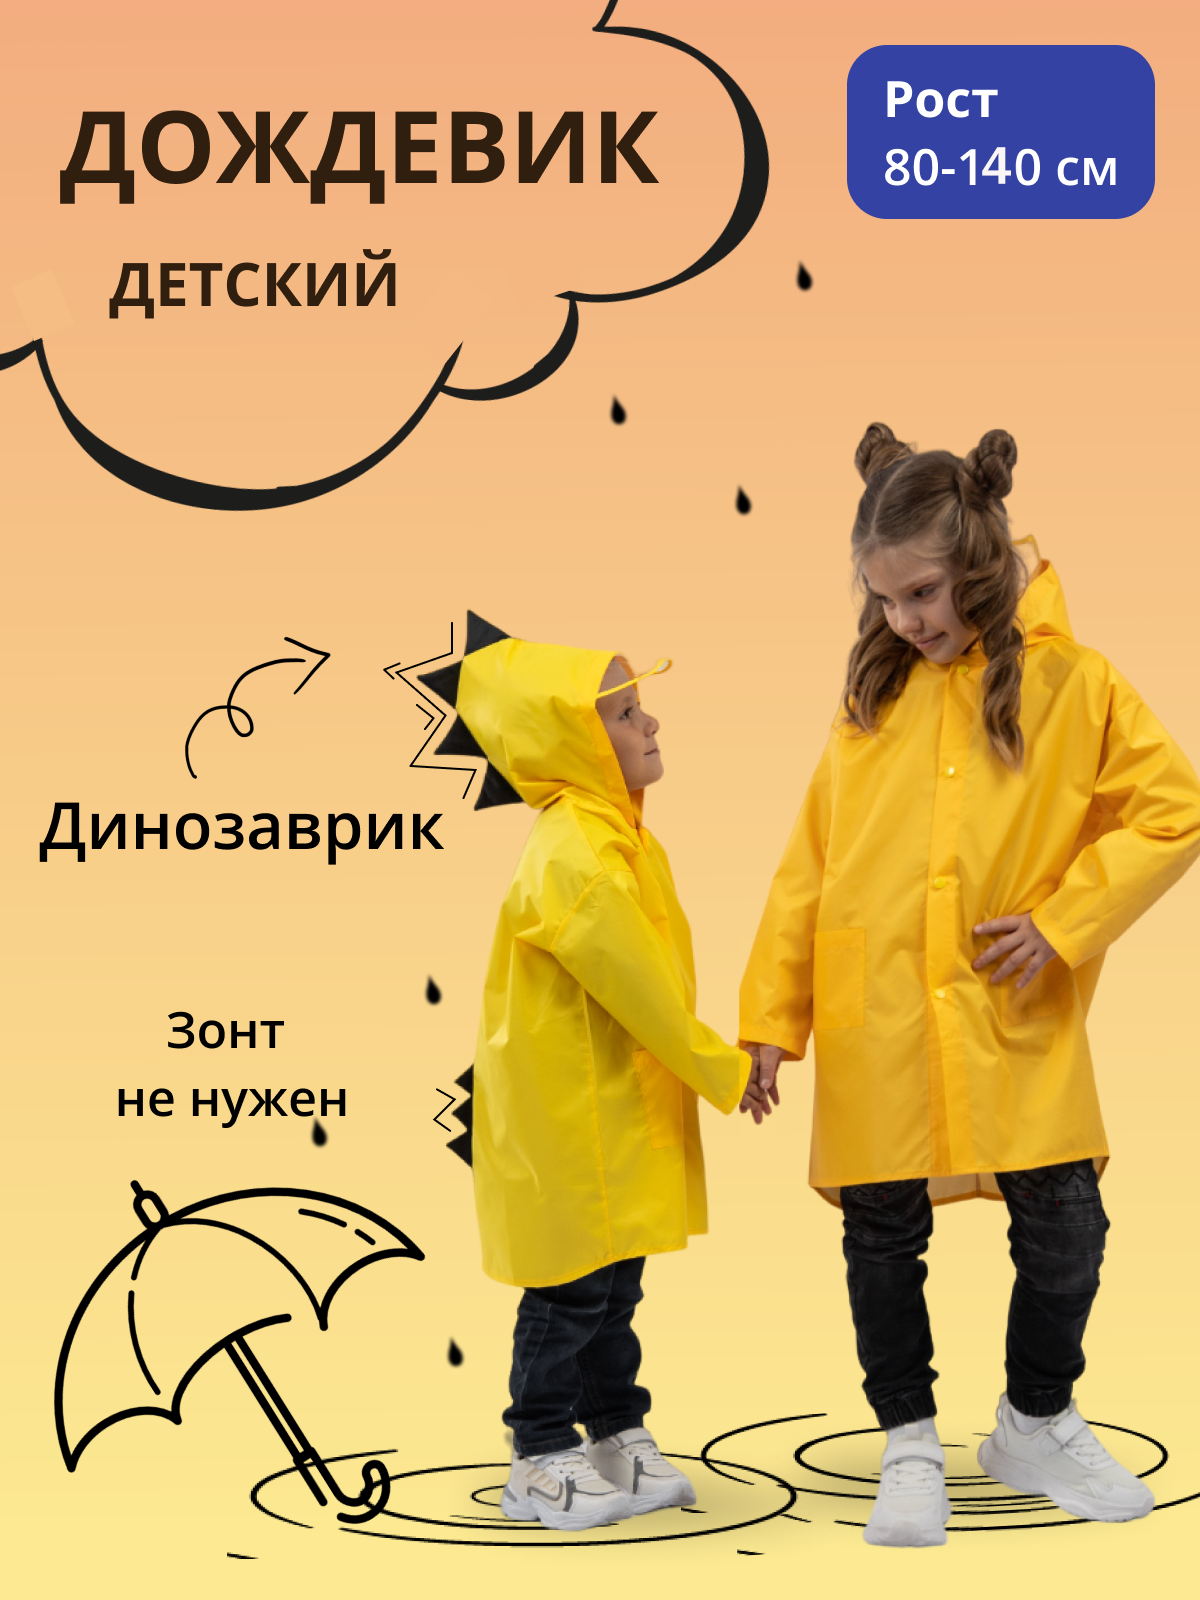 Дождевик детский Под дождем 122855956, желтый, 80 дождевик детский под дождем 122855956 желтый 104